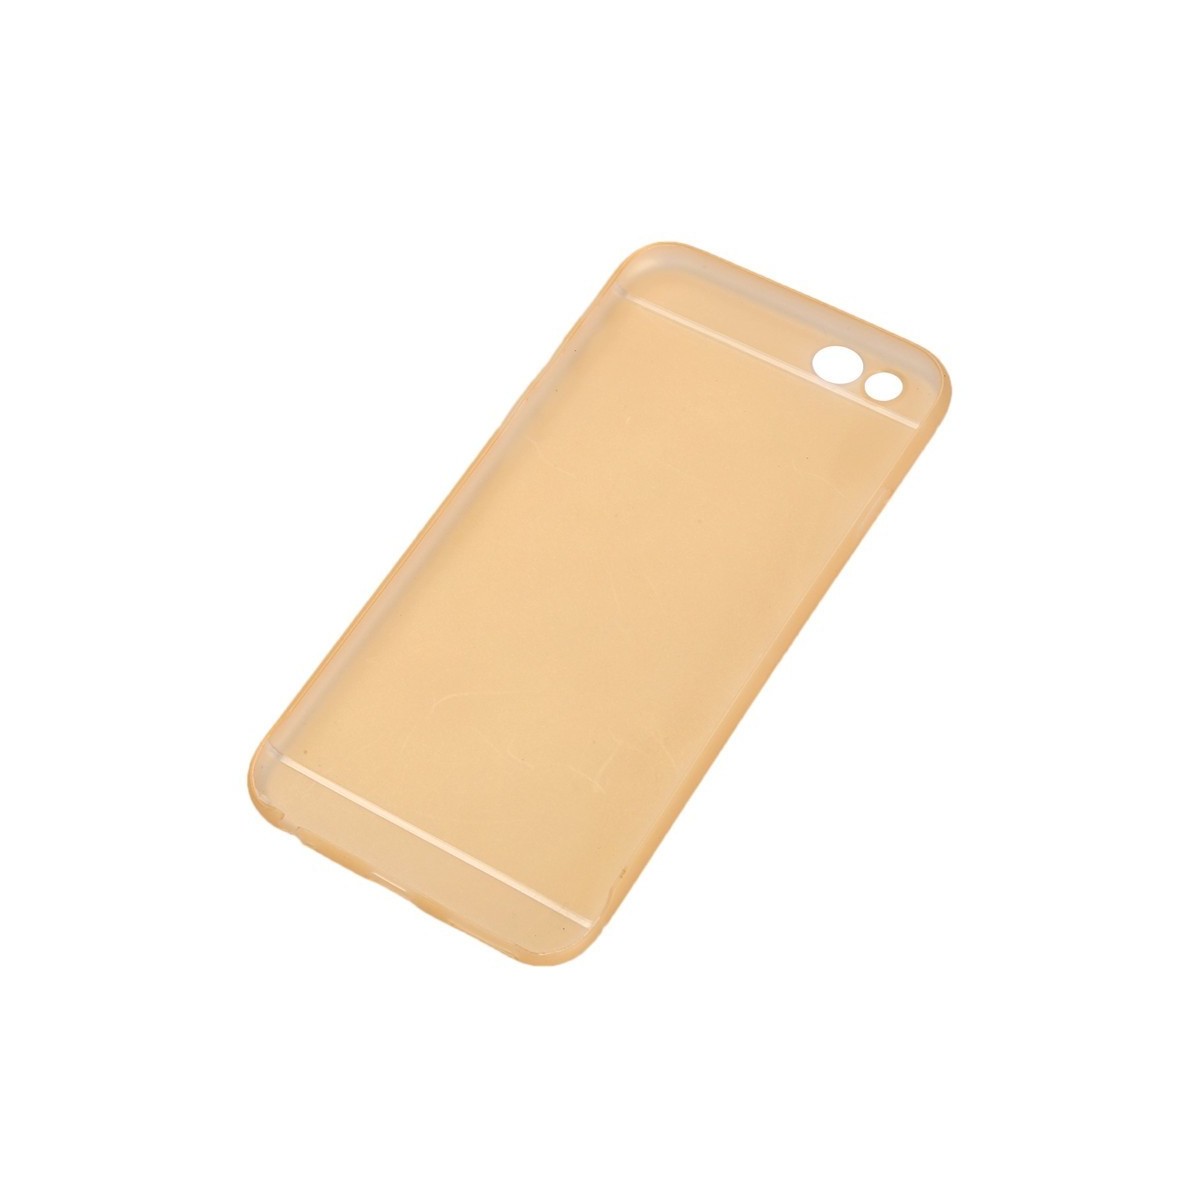 Coque Ultra Slim Translucide pour iPhone 6/6S Plus Orange